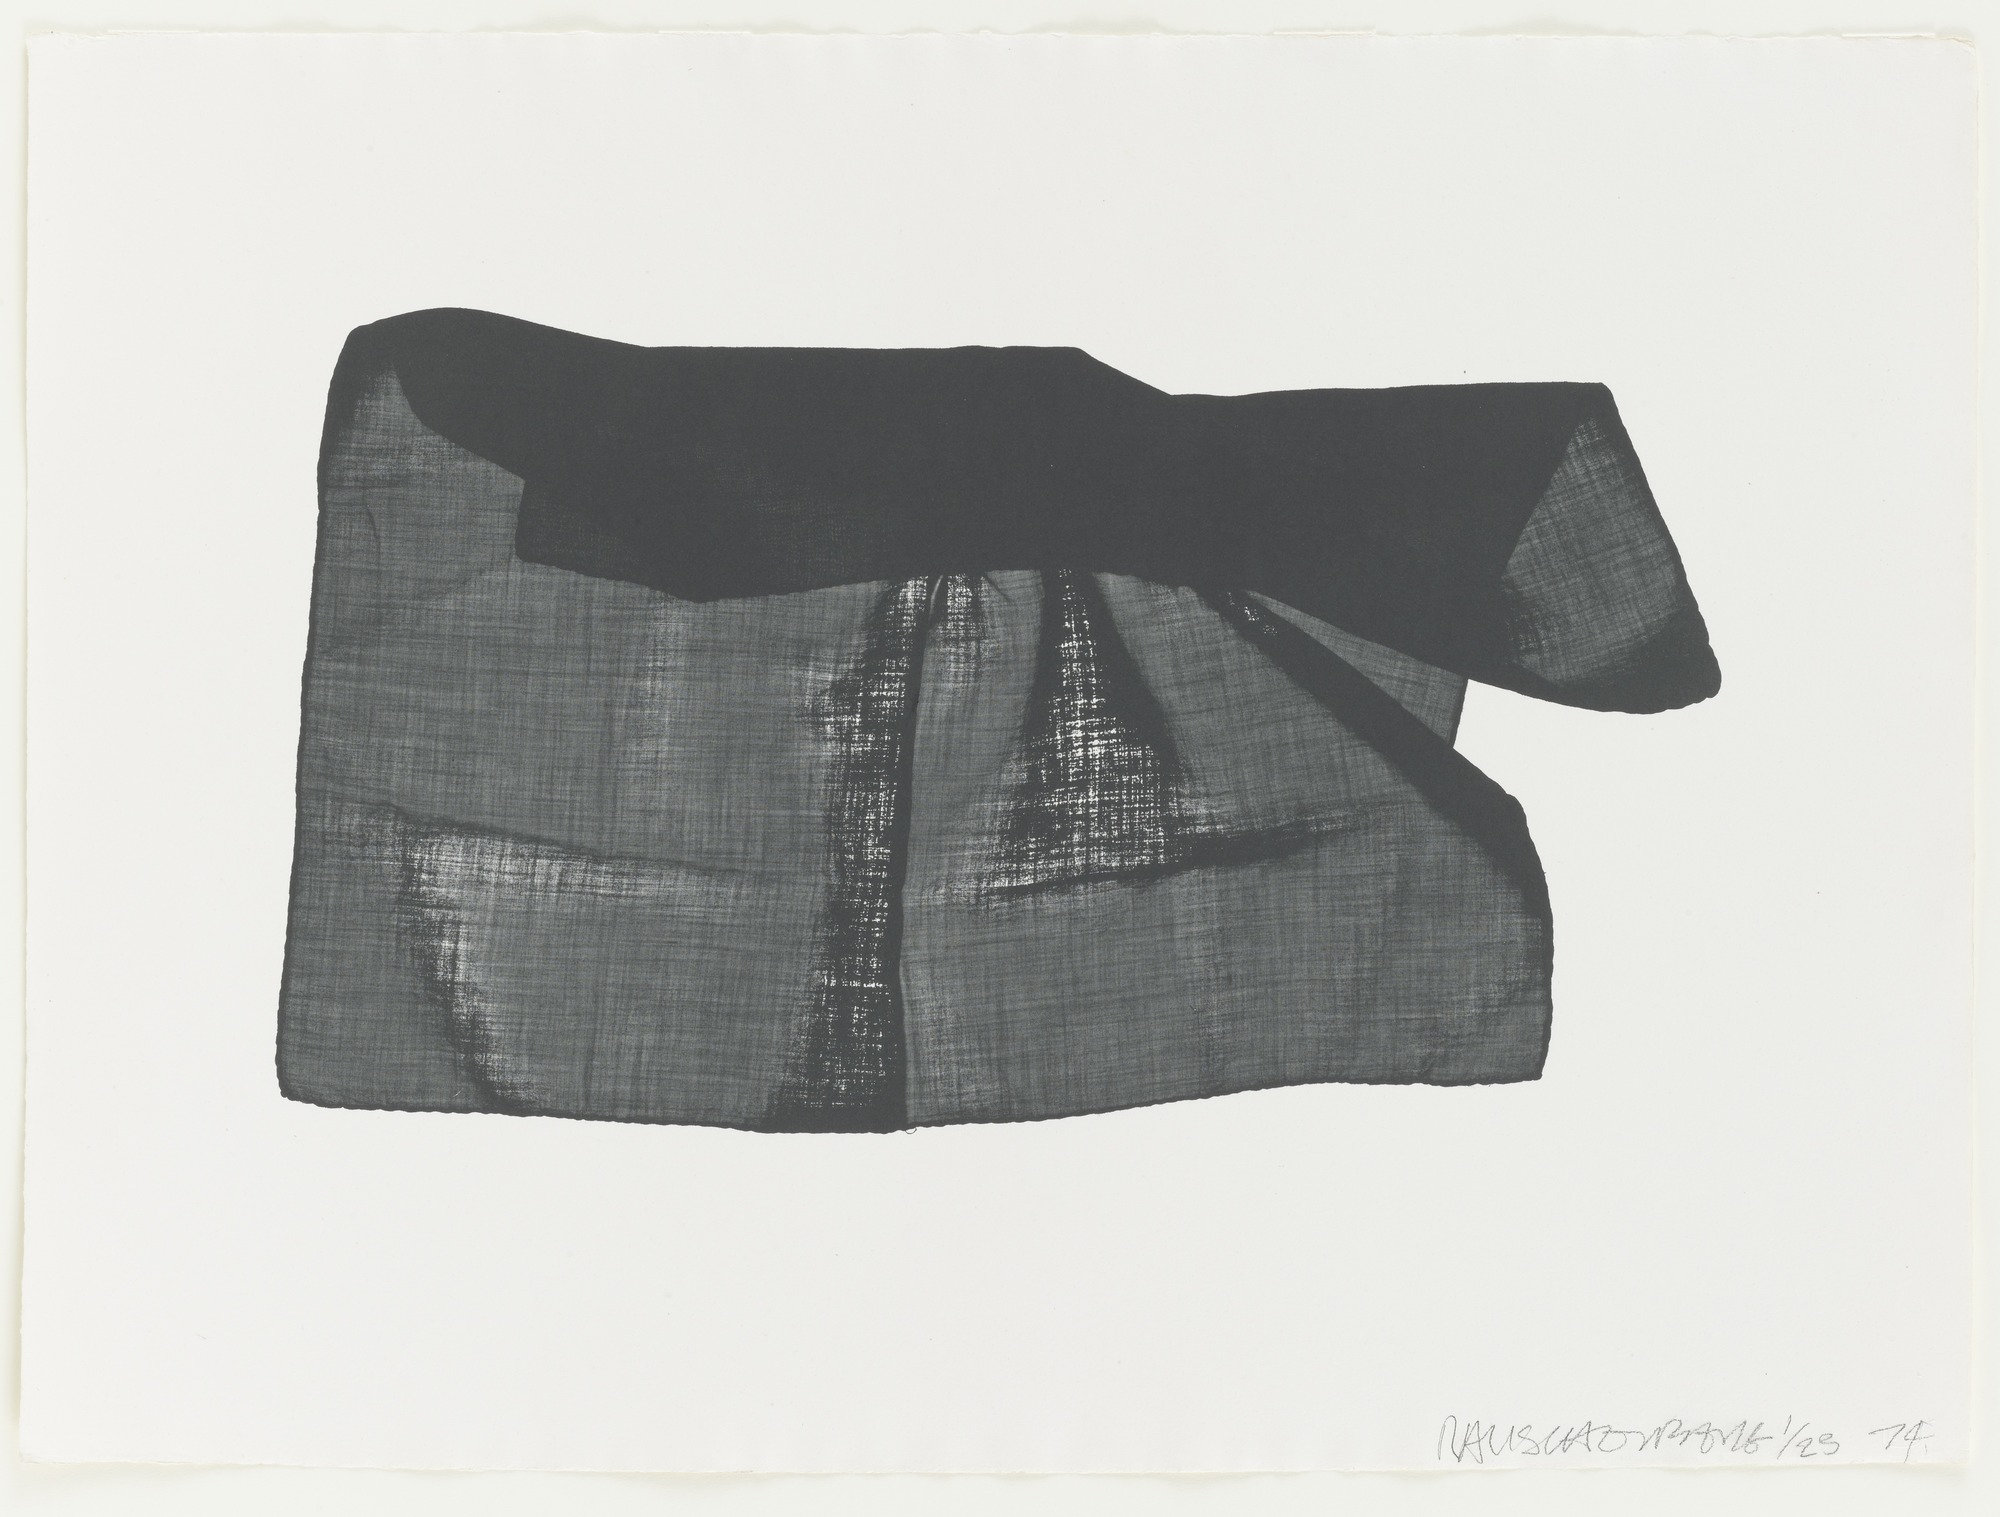  Robert Rauschenberg, Veils, 3, 1974. Courtesy of the Museum of Modern Art.